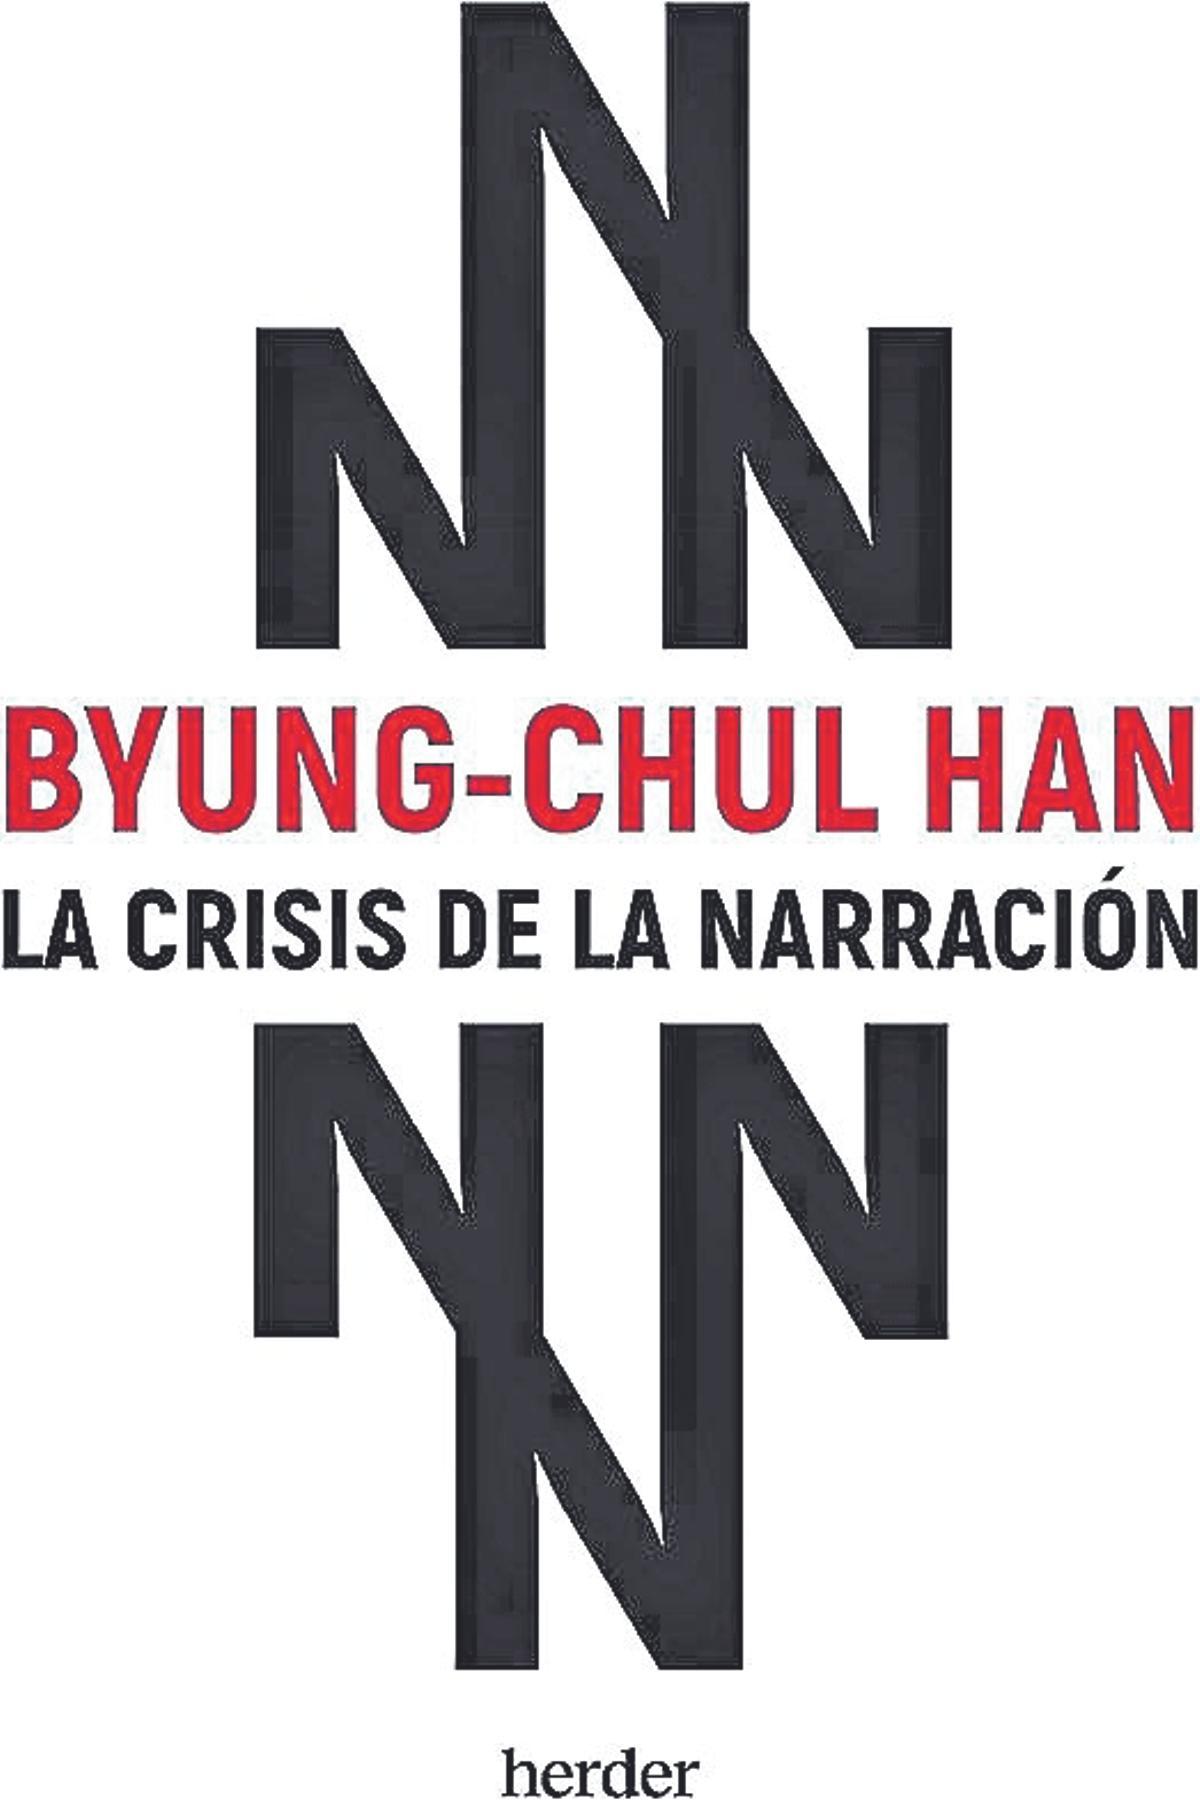 Byung-Chul Han  La crisis de la narración  Traducción de Alberto Ciria   Herder Editorial  112 páginas /  12 euros